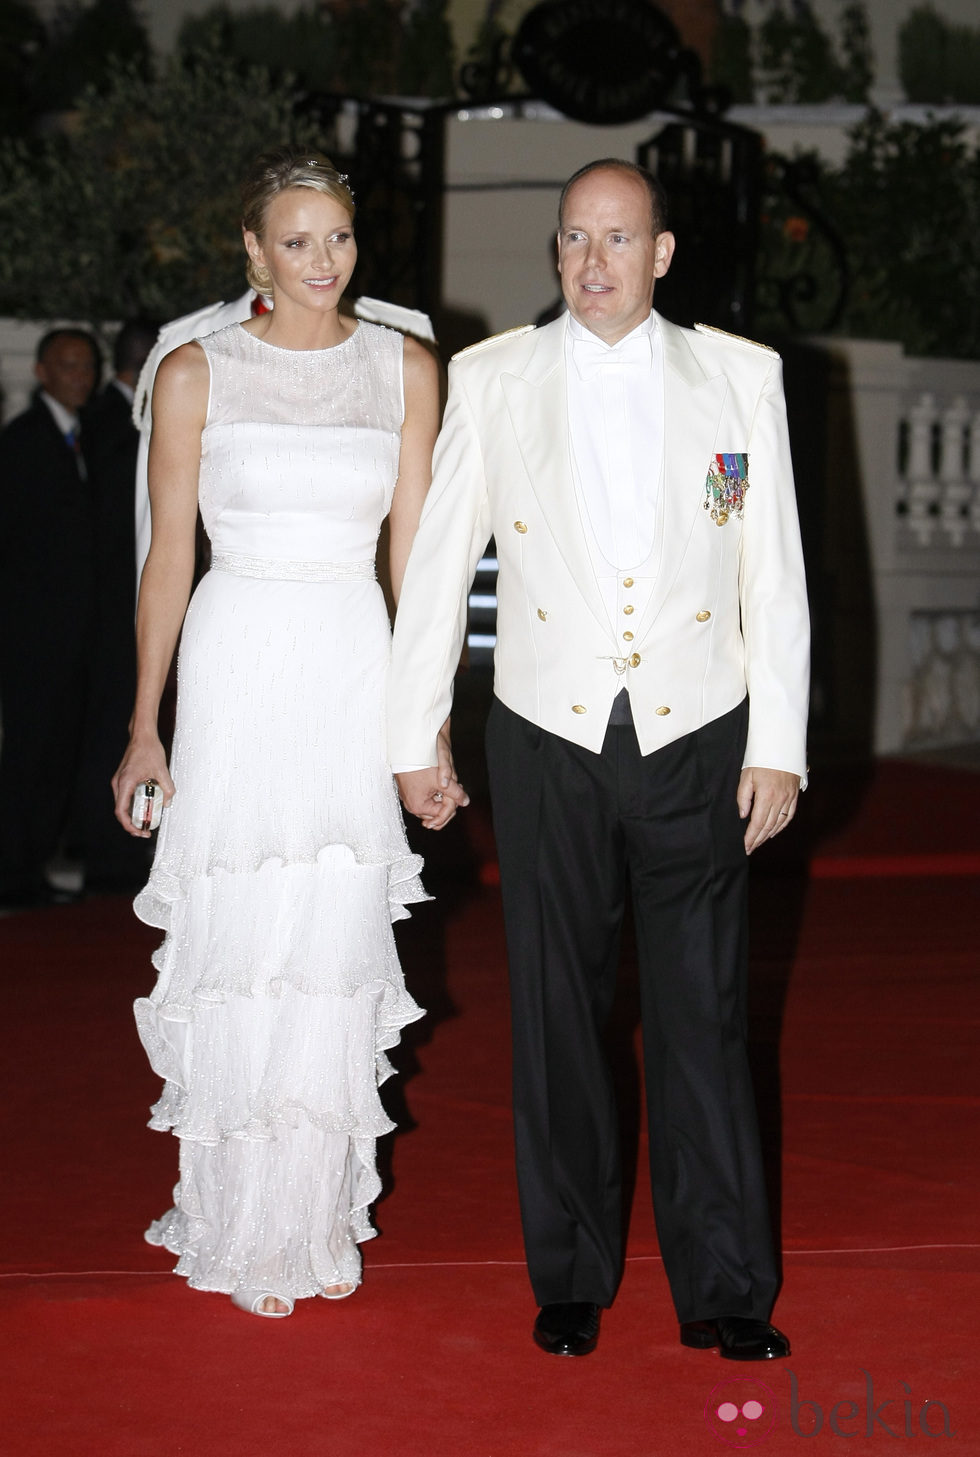 Charlene Wittstock y Alberto de Mónaco llegan a la cena de gala